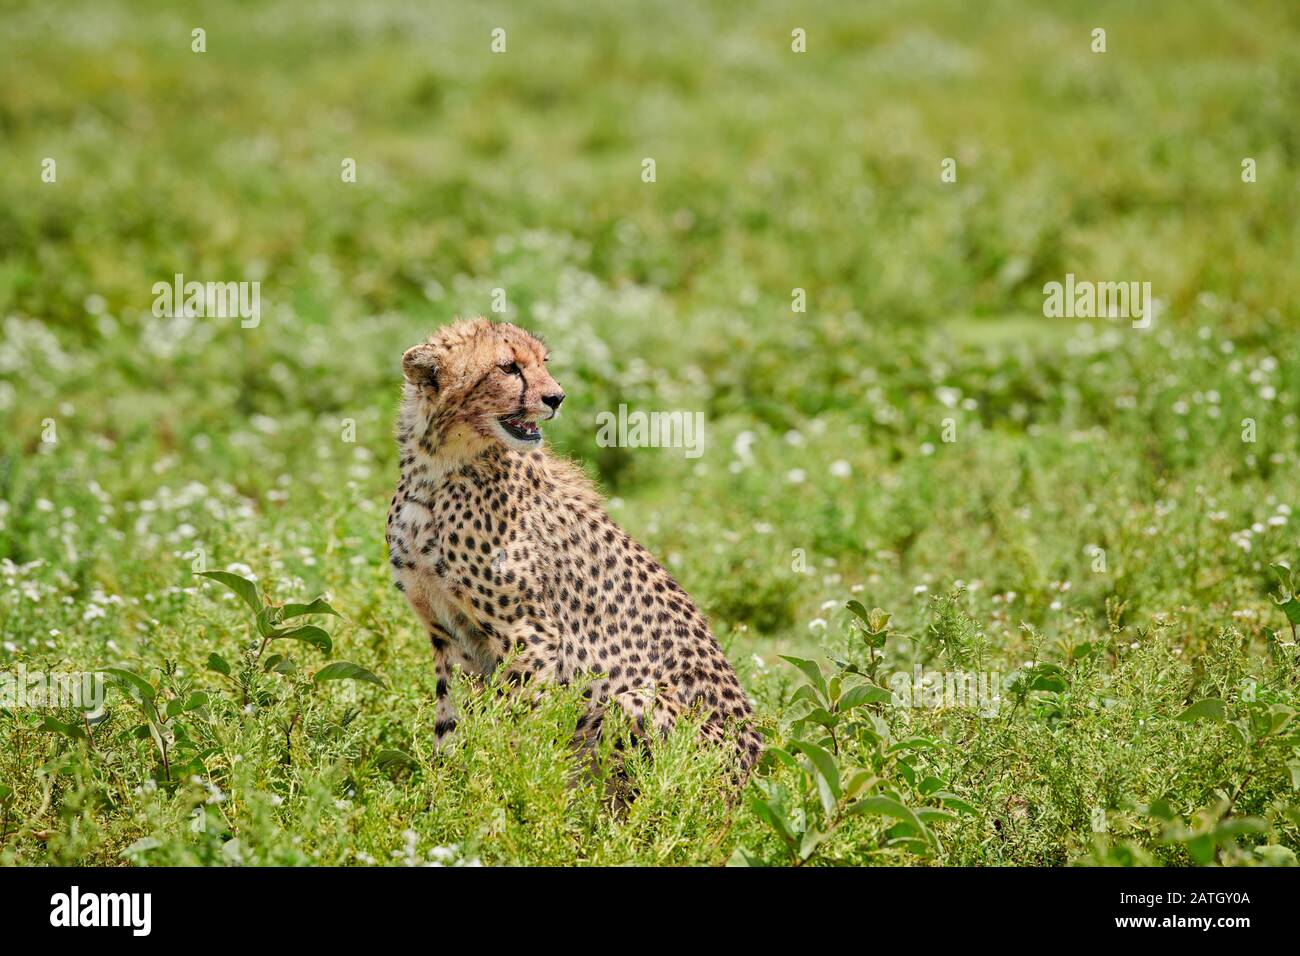 young cheetah, Acinonyx jubatus, in Serengeti National Park, UNESCO world heritage site, Tanzania, Africa Stock Photo